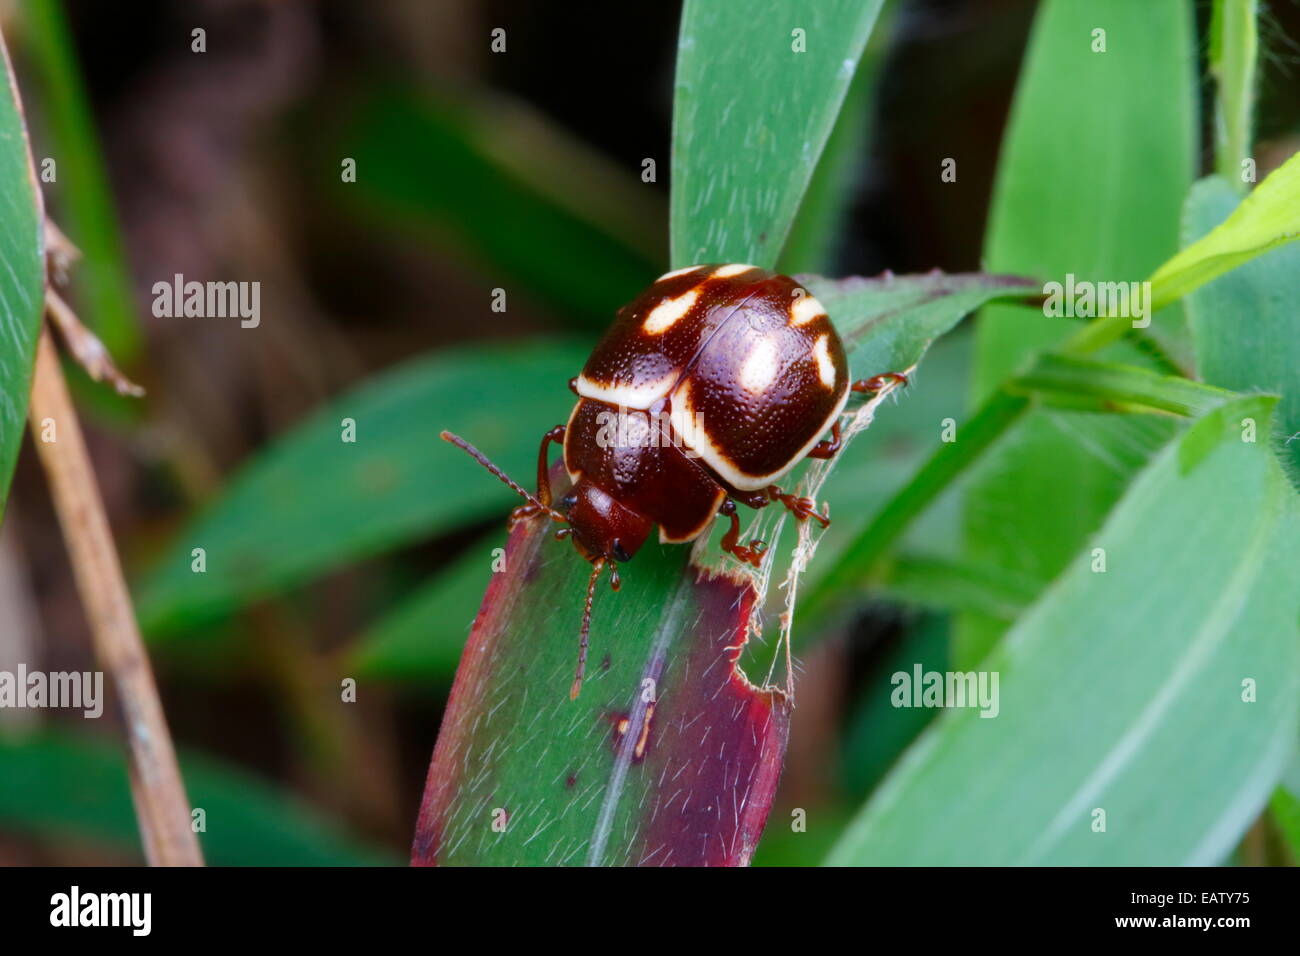 Un marrone e bianco scarabeo di foglia, probabilmente Chrysomelidae specie, rovistando su una foglia. Foto Stock